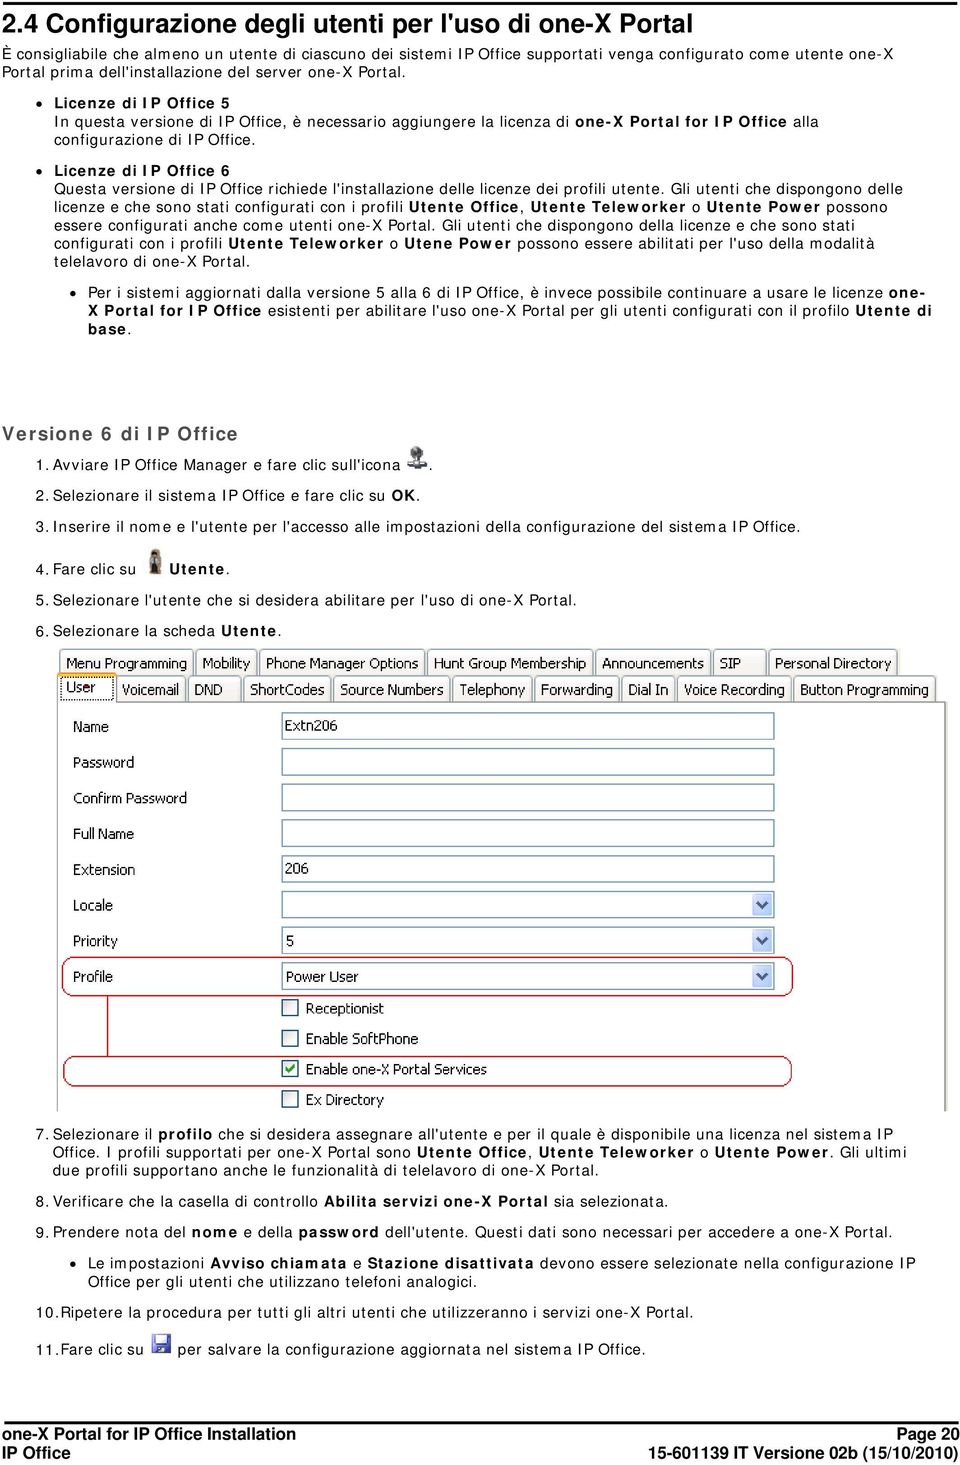 Licenze di 6 Questa versione di richiede l'installazione delle licenze dei profili utente.